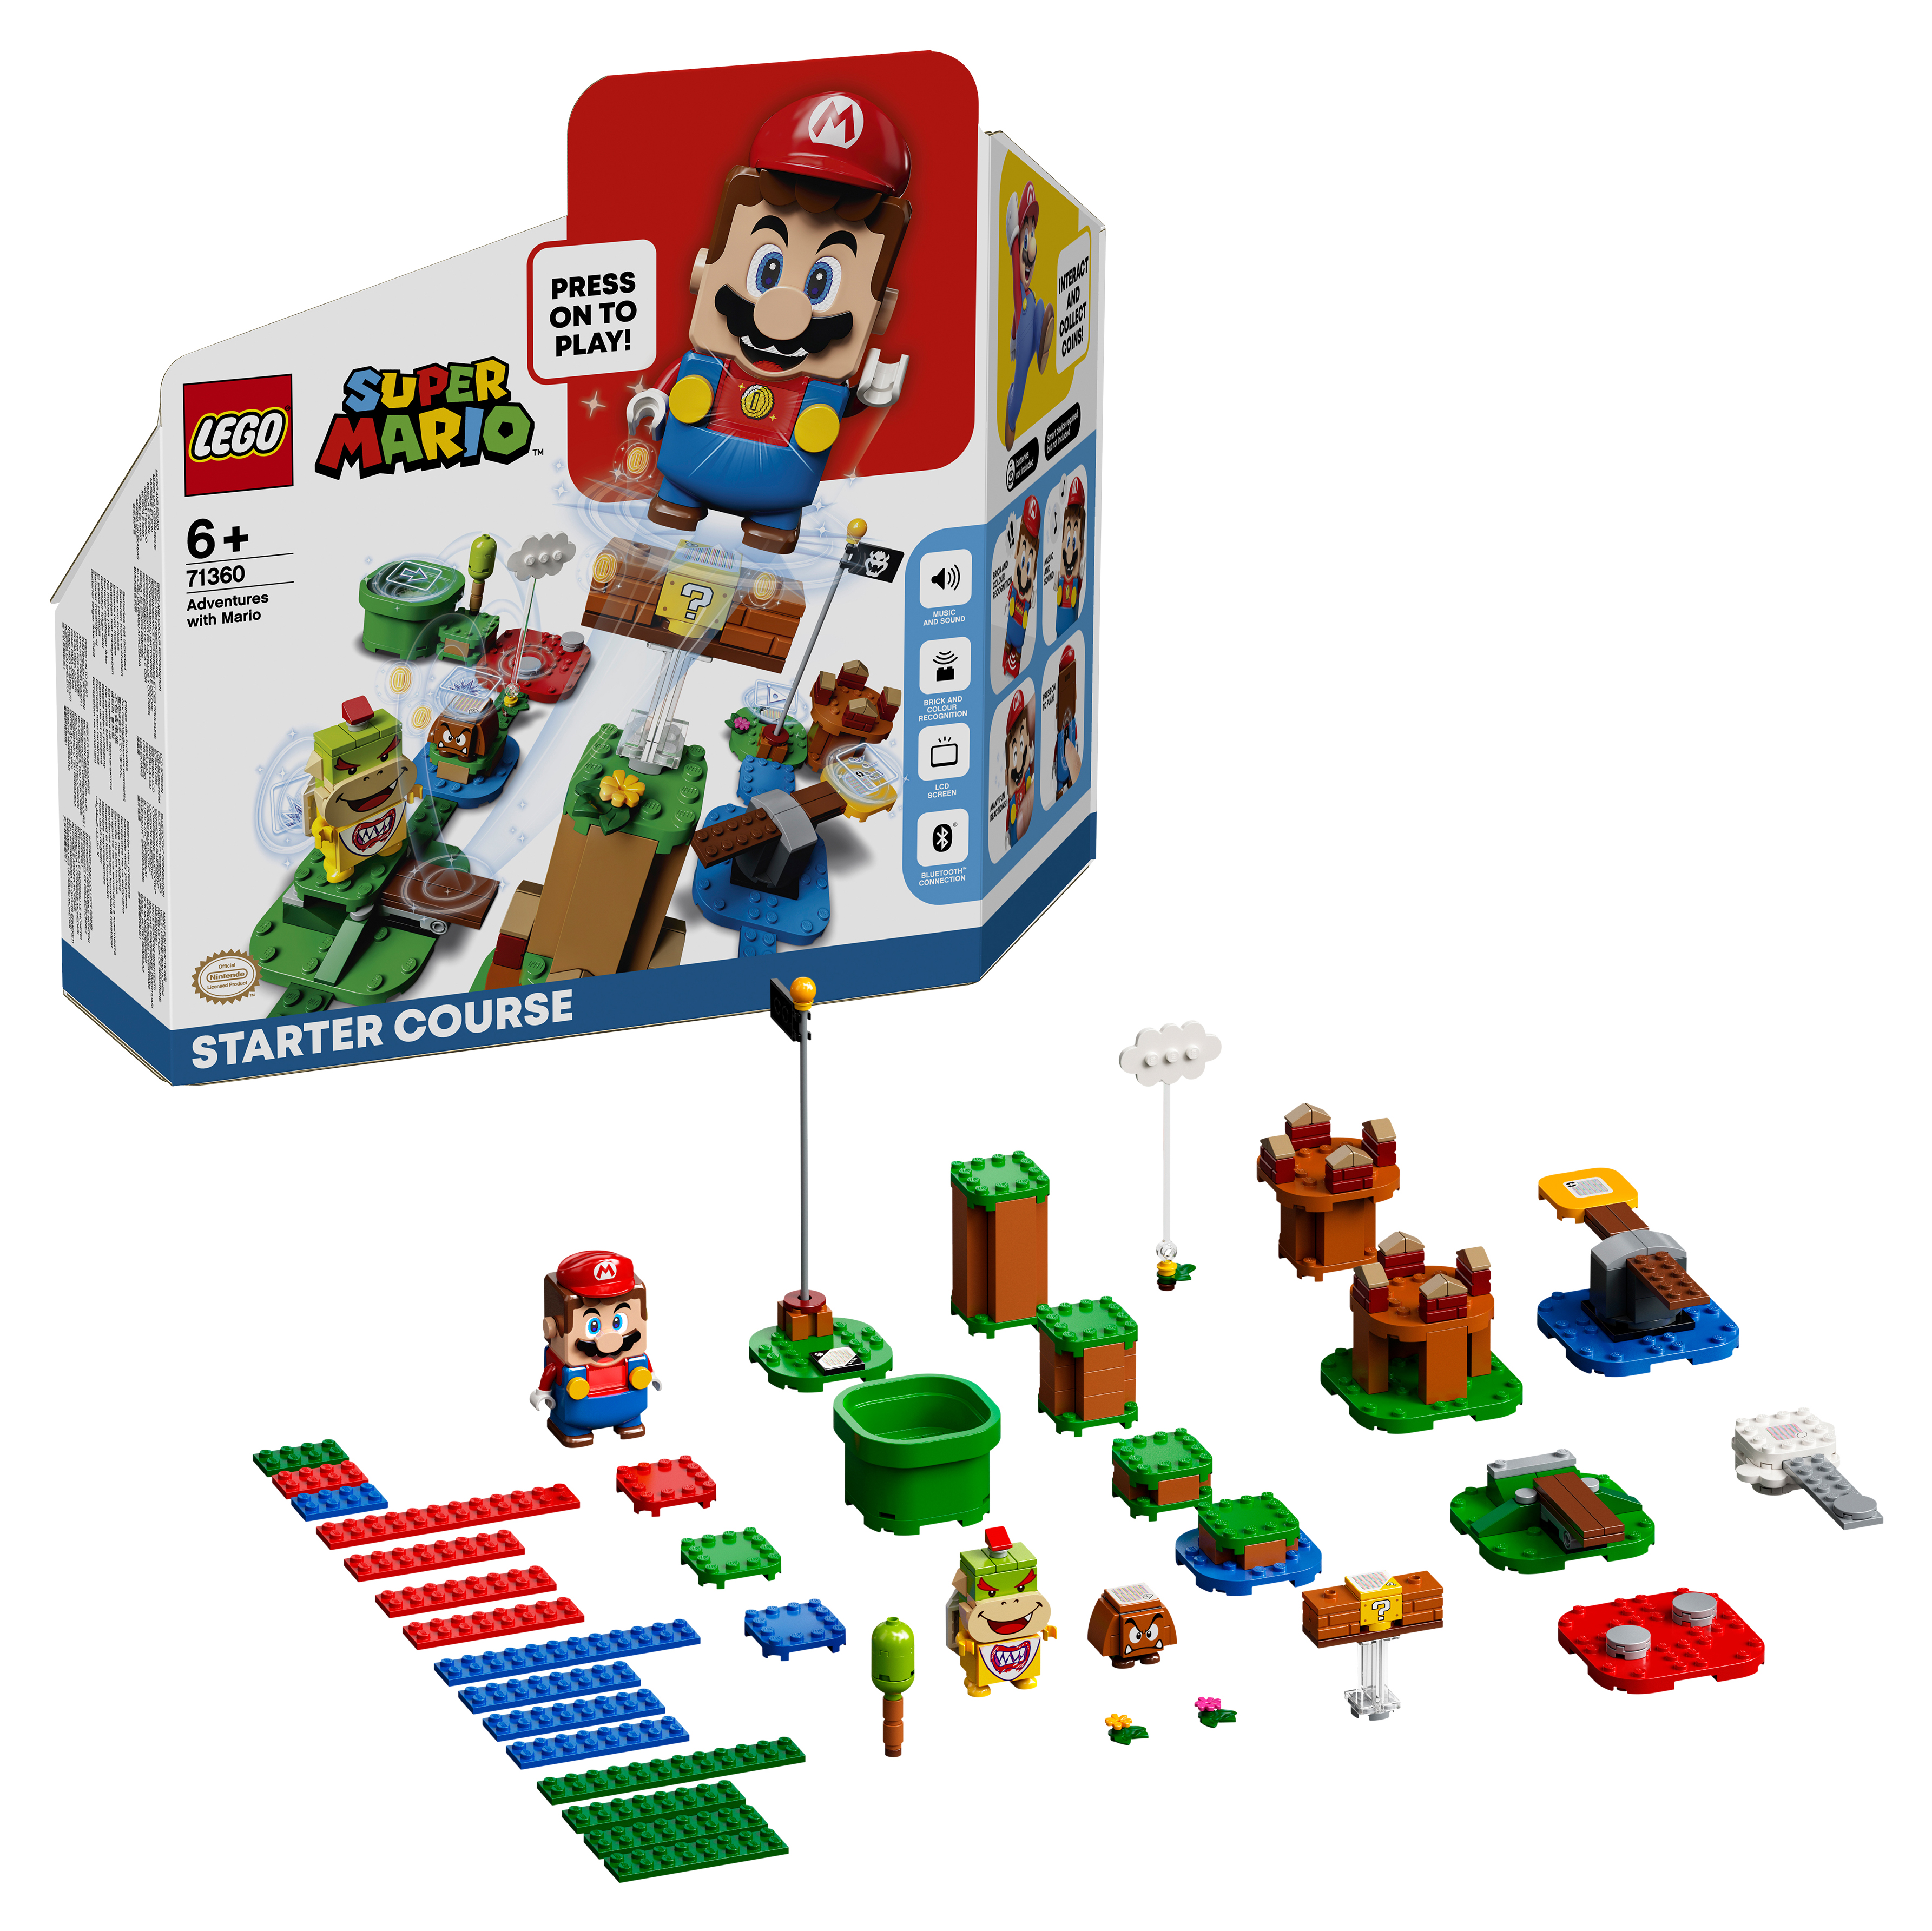 Конструктор LEGO Super Mario Приключения вместе с Марио Стартовый набор, 231 деталь, 71360 конструктор xingbao xb 03025 внедорожные приключения джип монстр 371 деталь